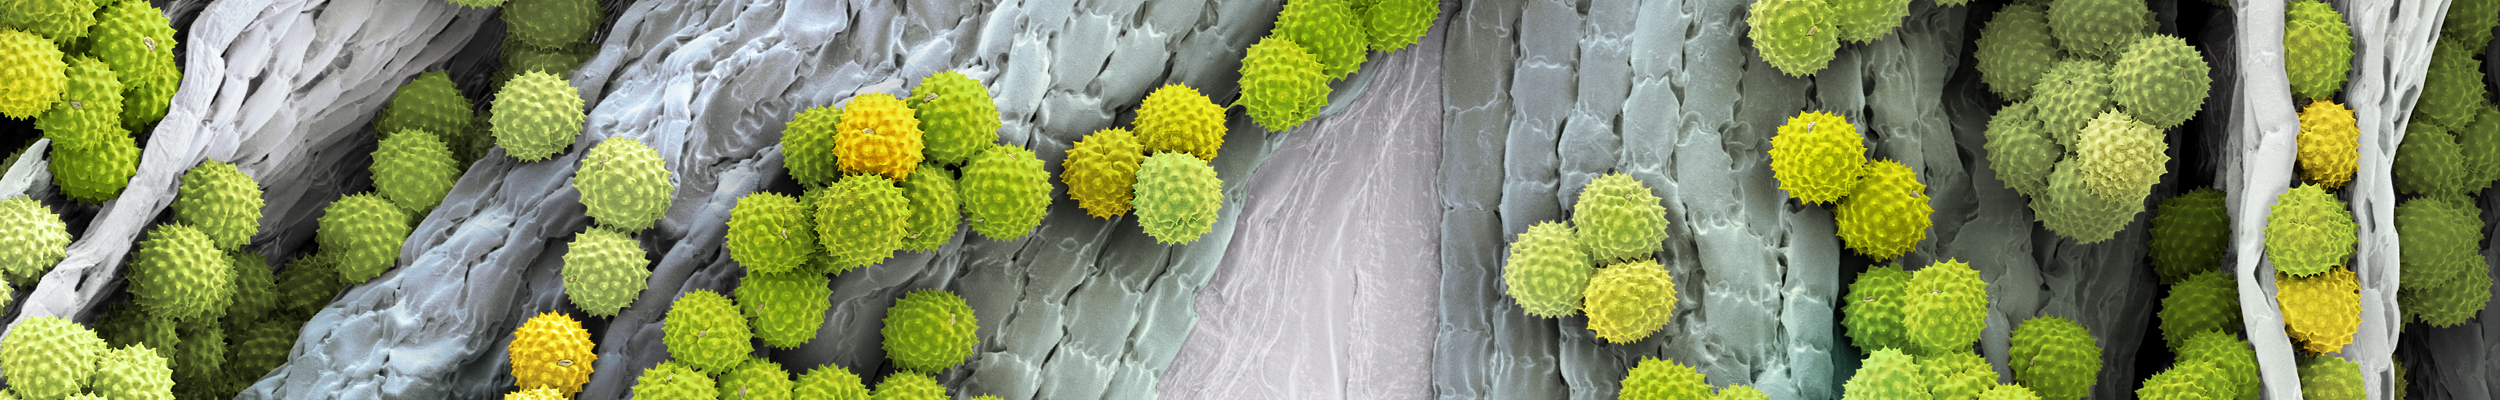 Micronaut Pollen Ambrosia 00061647 horizontal3